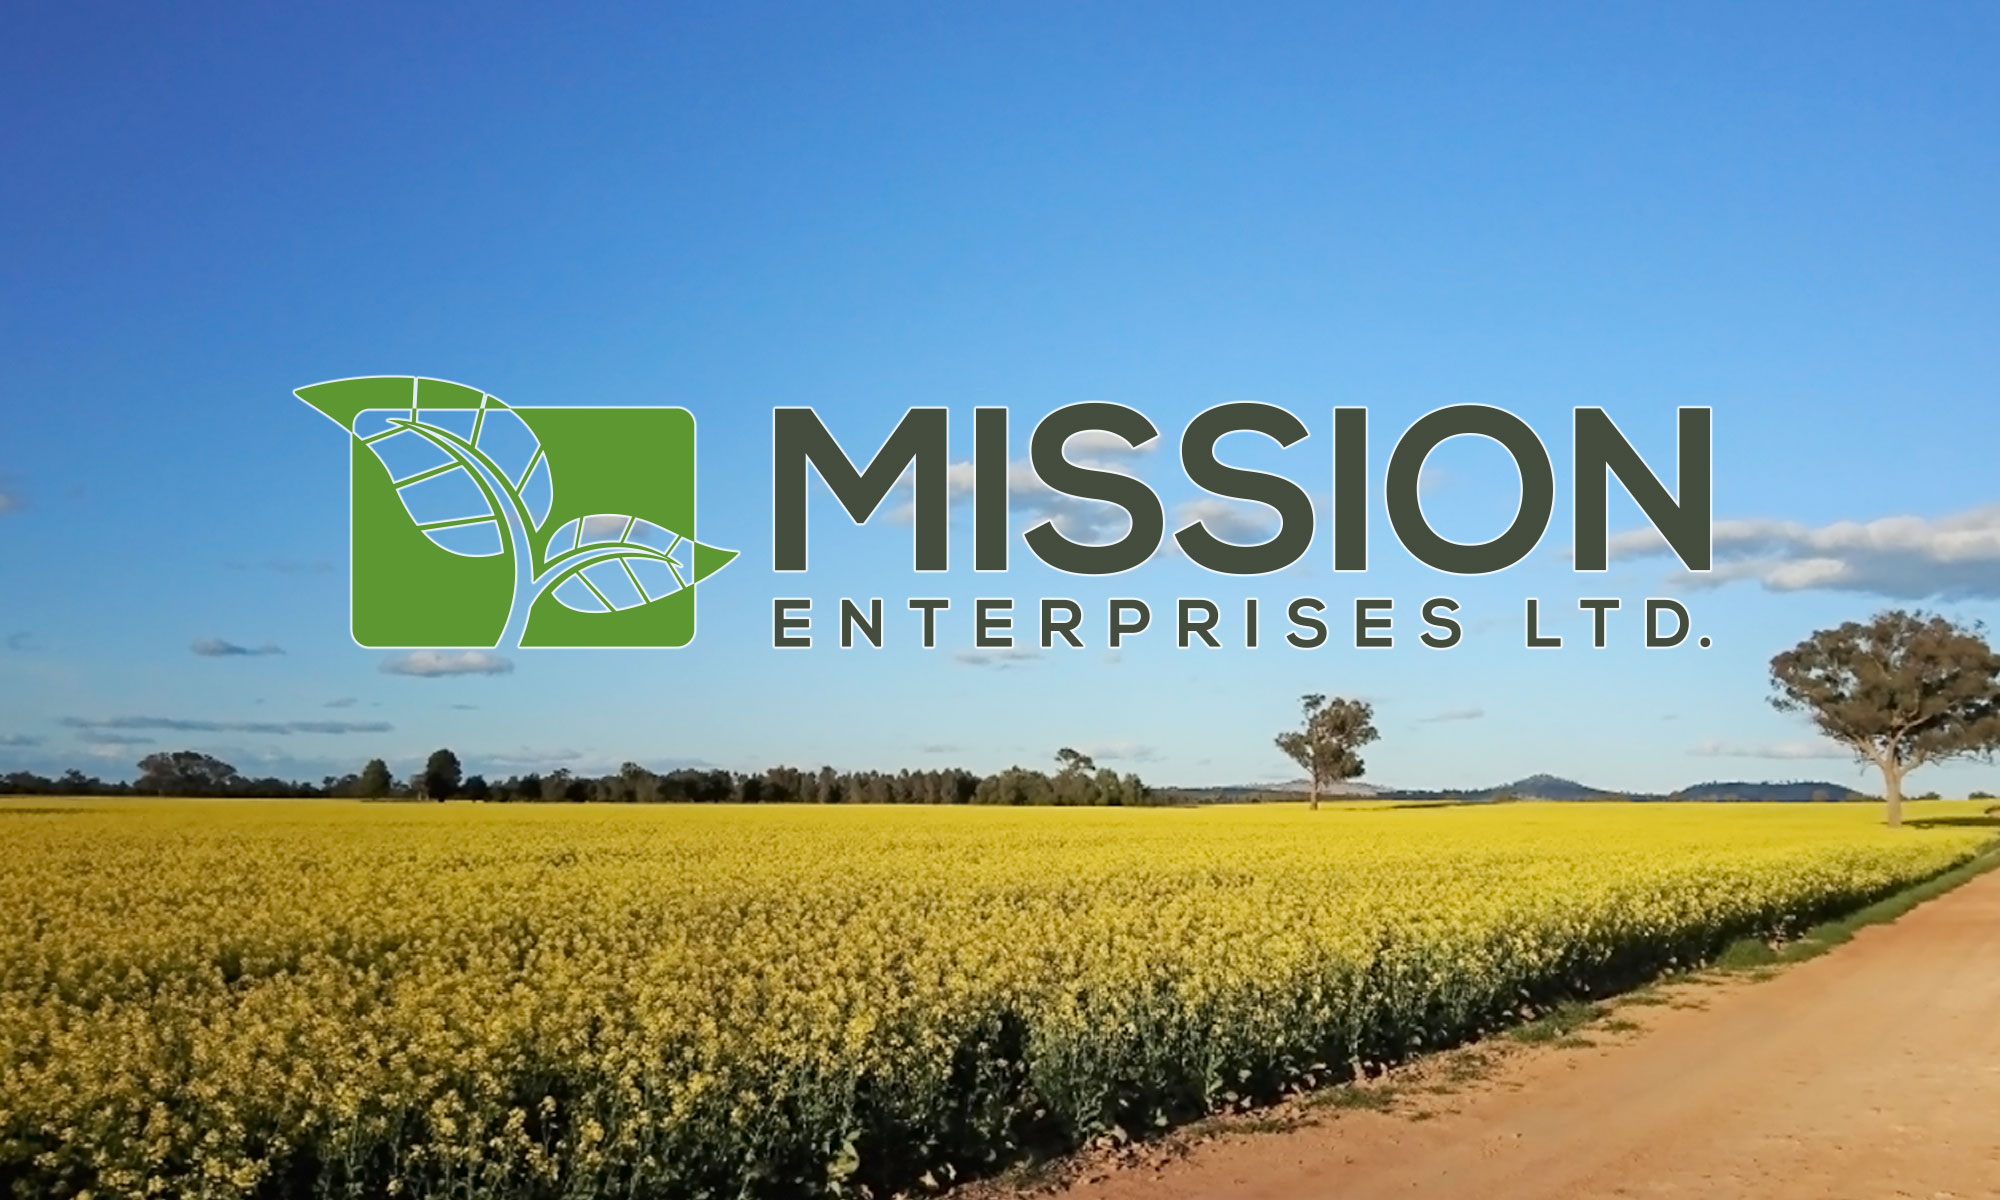 Mission Enterprises Ltd